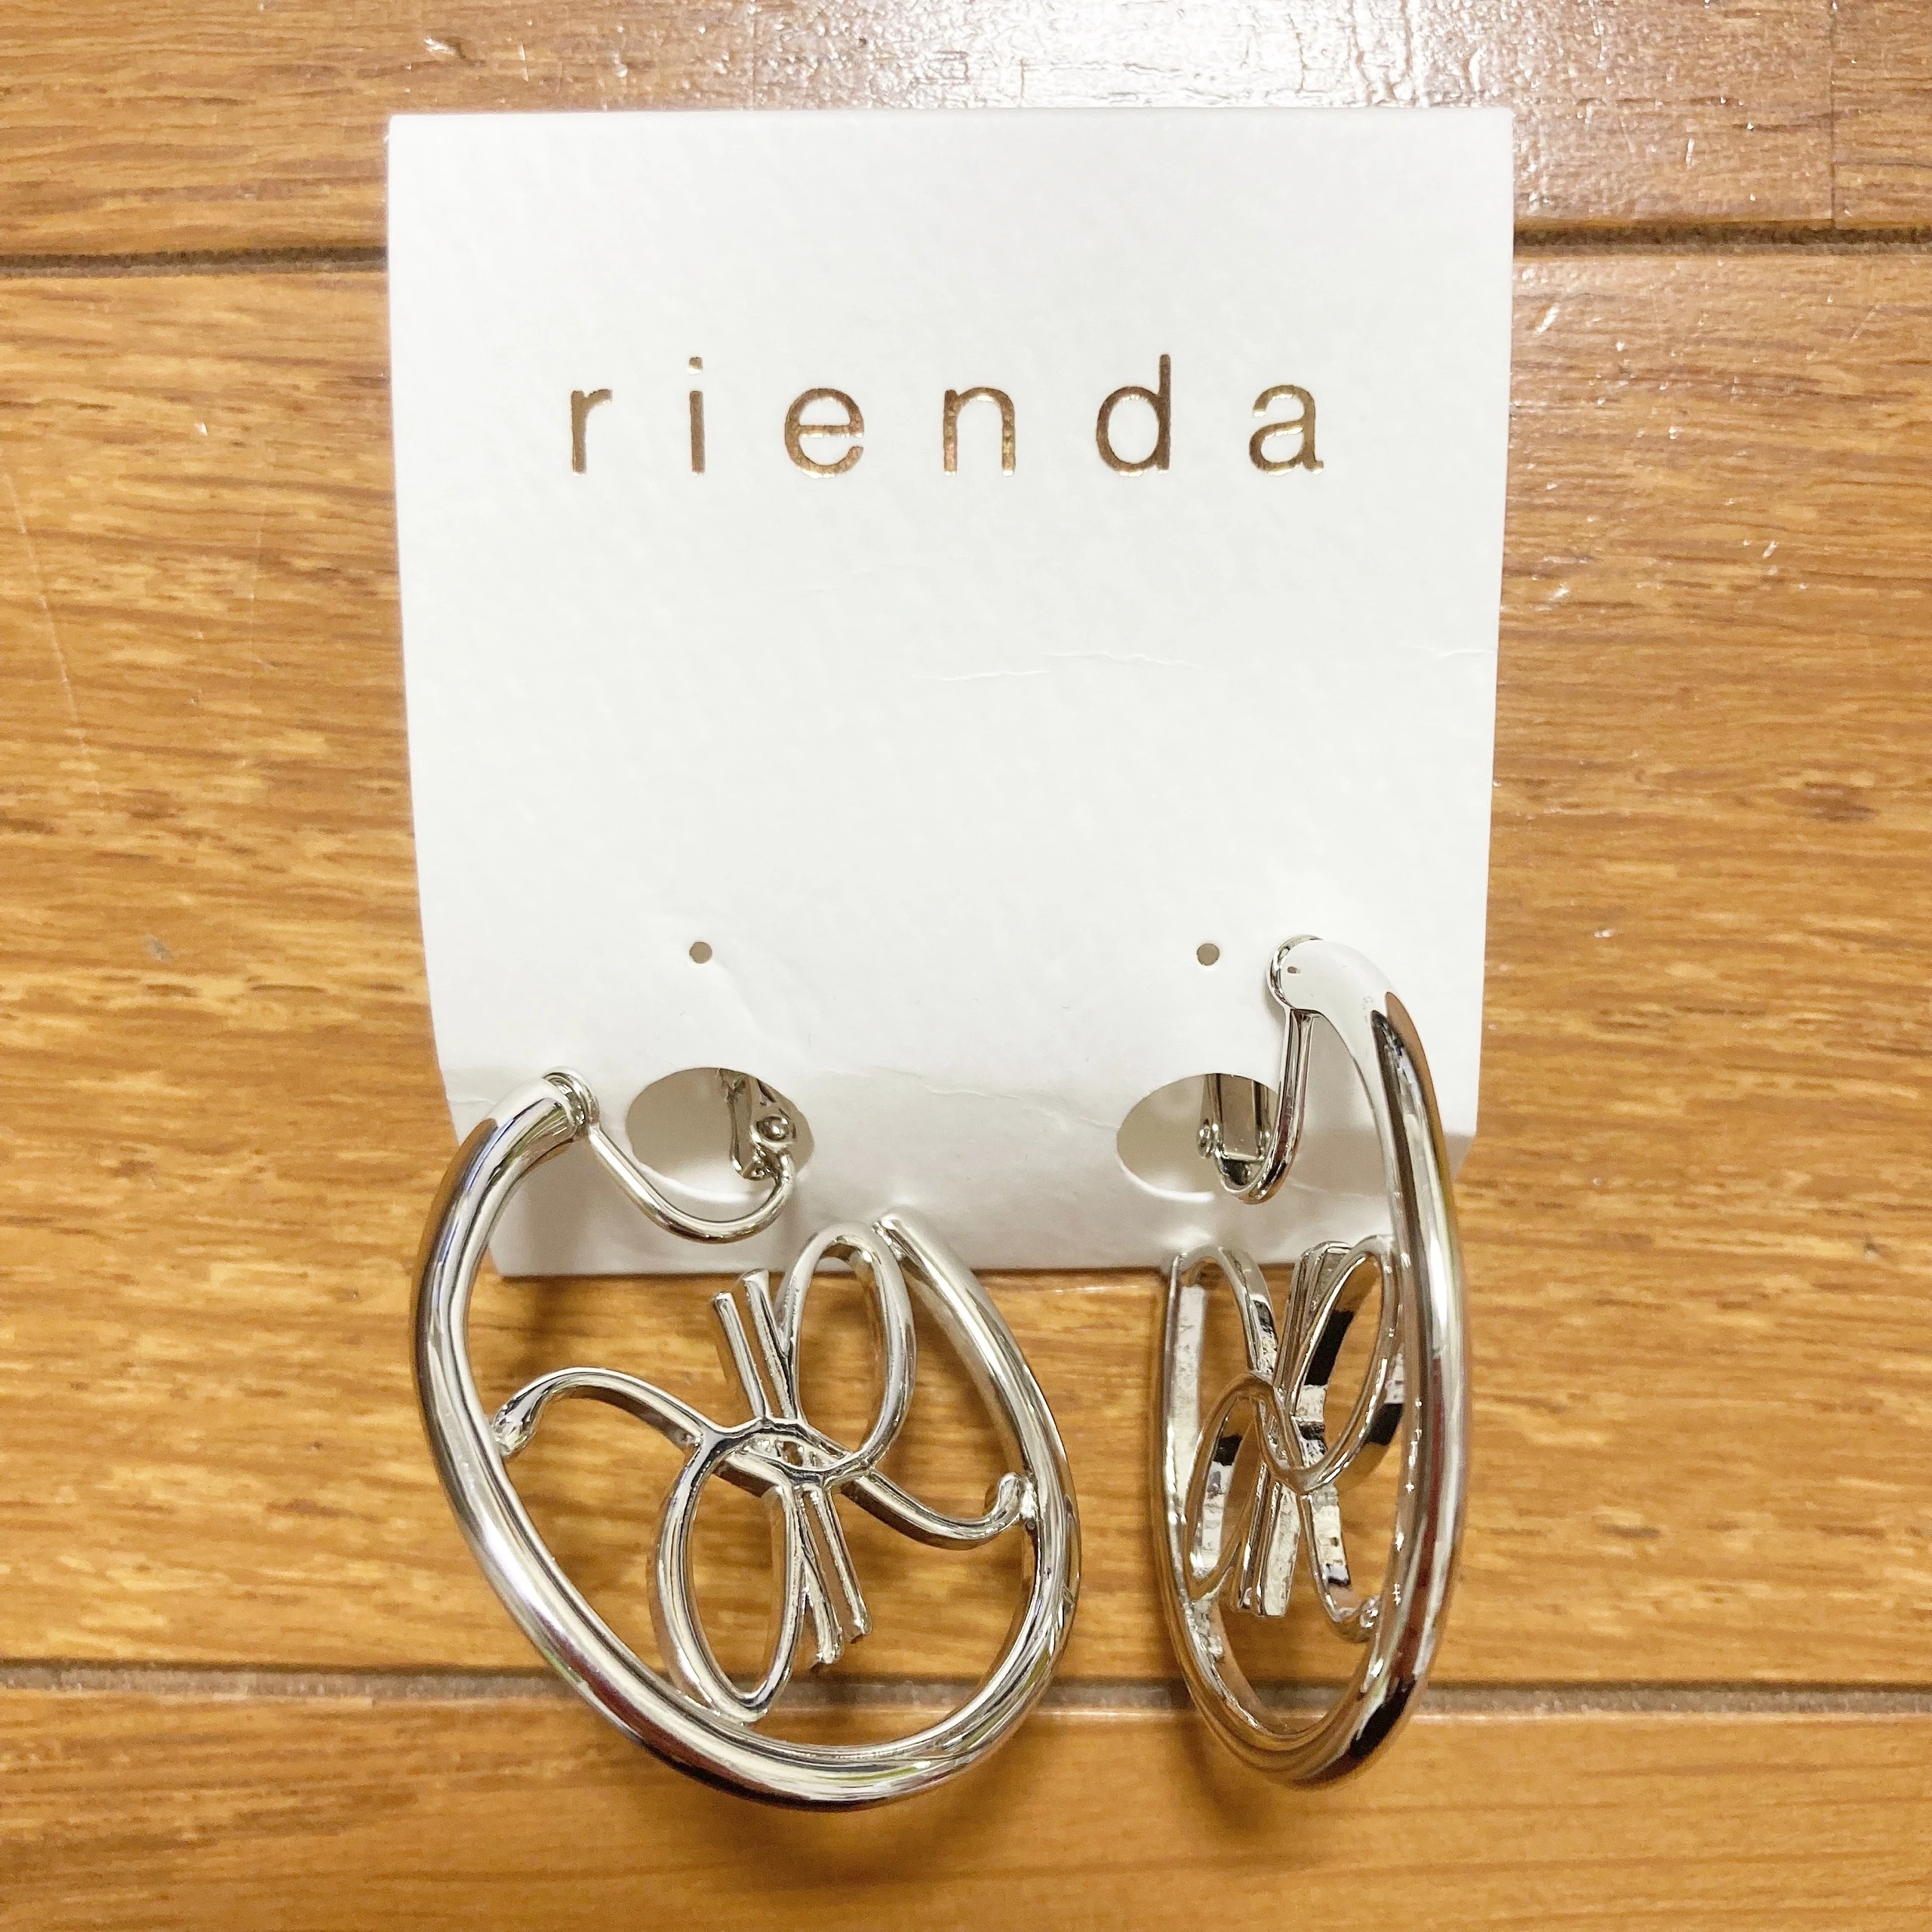 『rienda』イヤリング。ブランドロゴのRを組み合わせたデザイン。